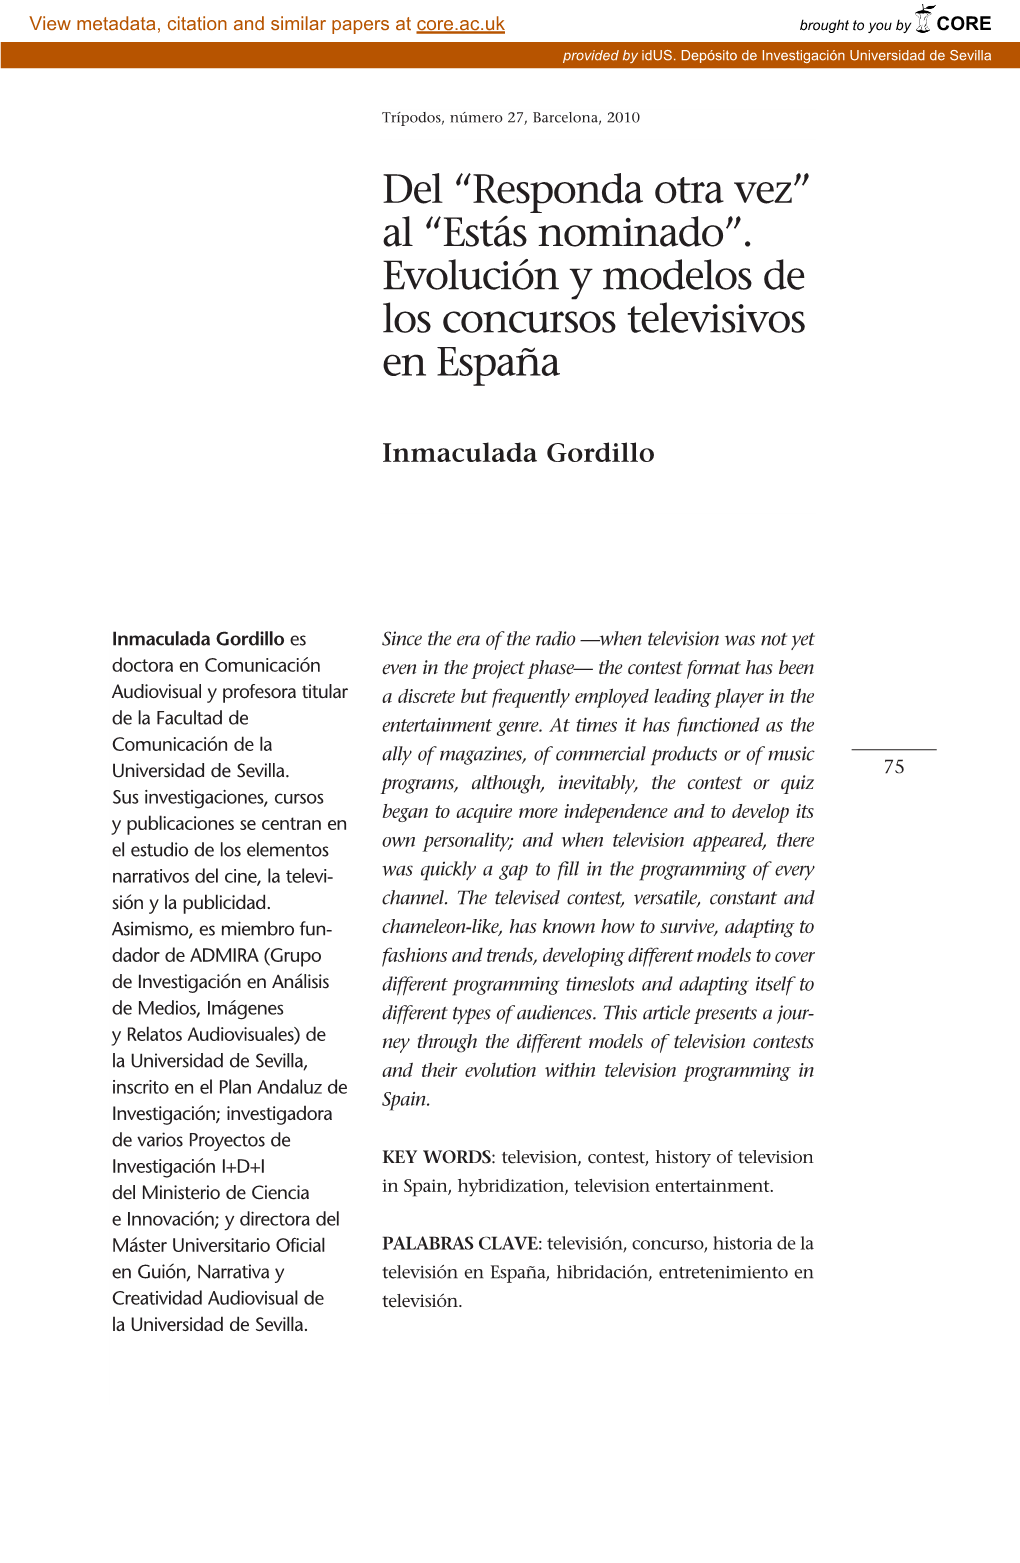 Evolución Y Modelos De Los Concursos Televisivos En España